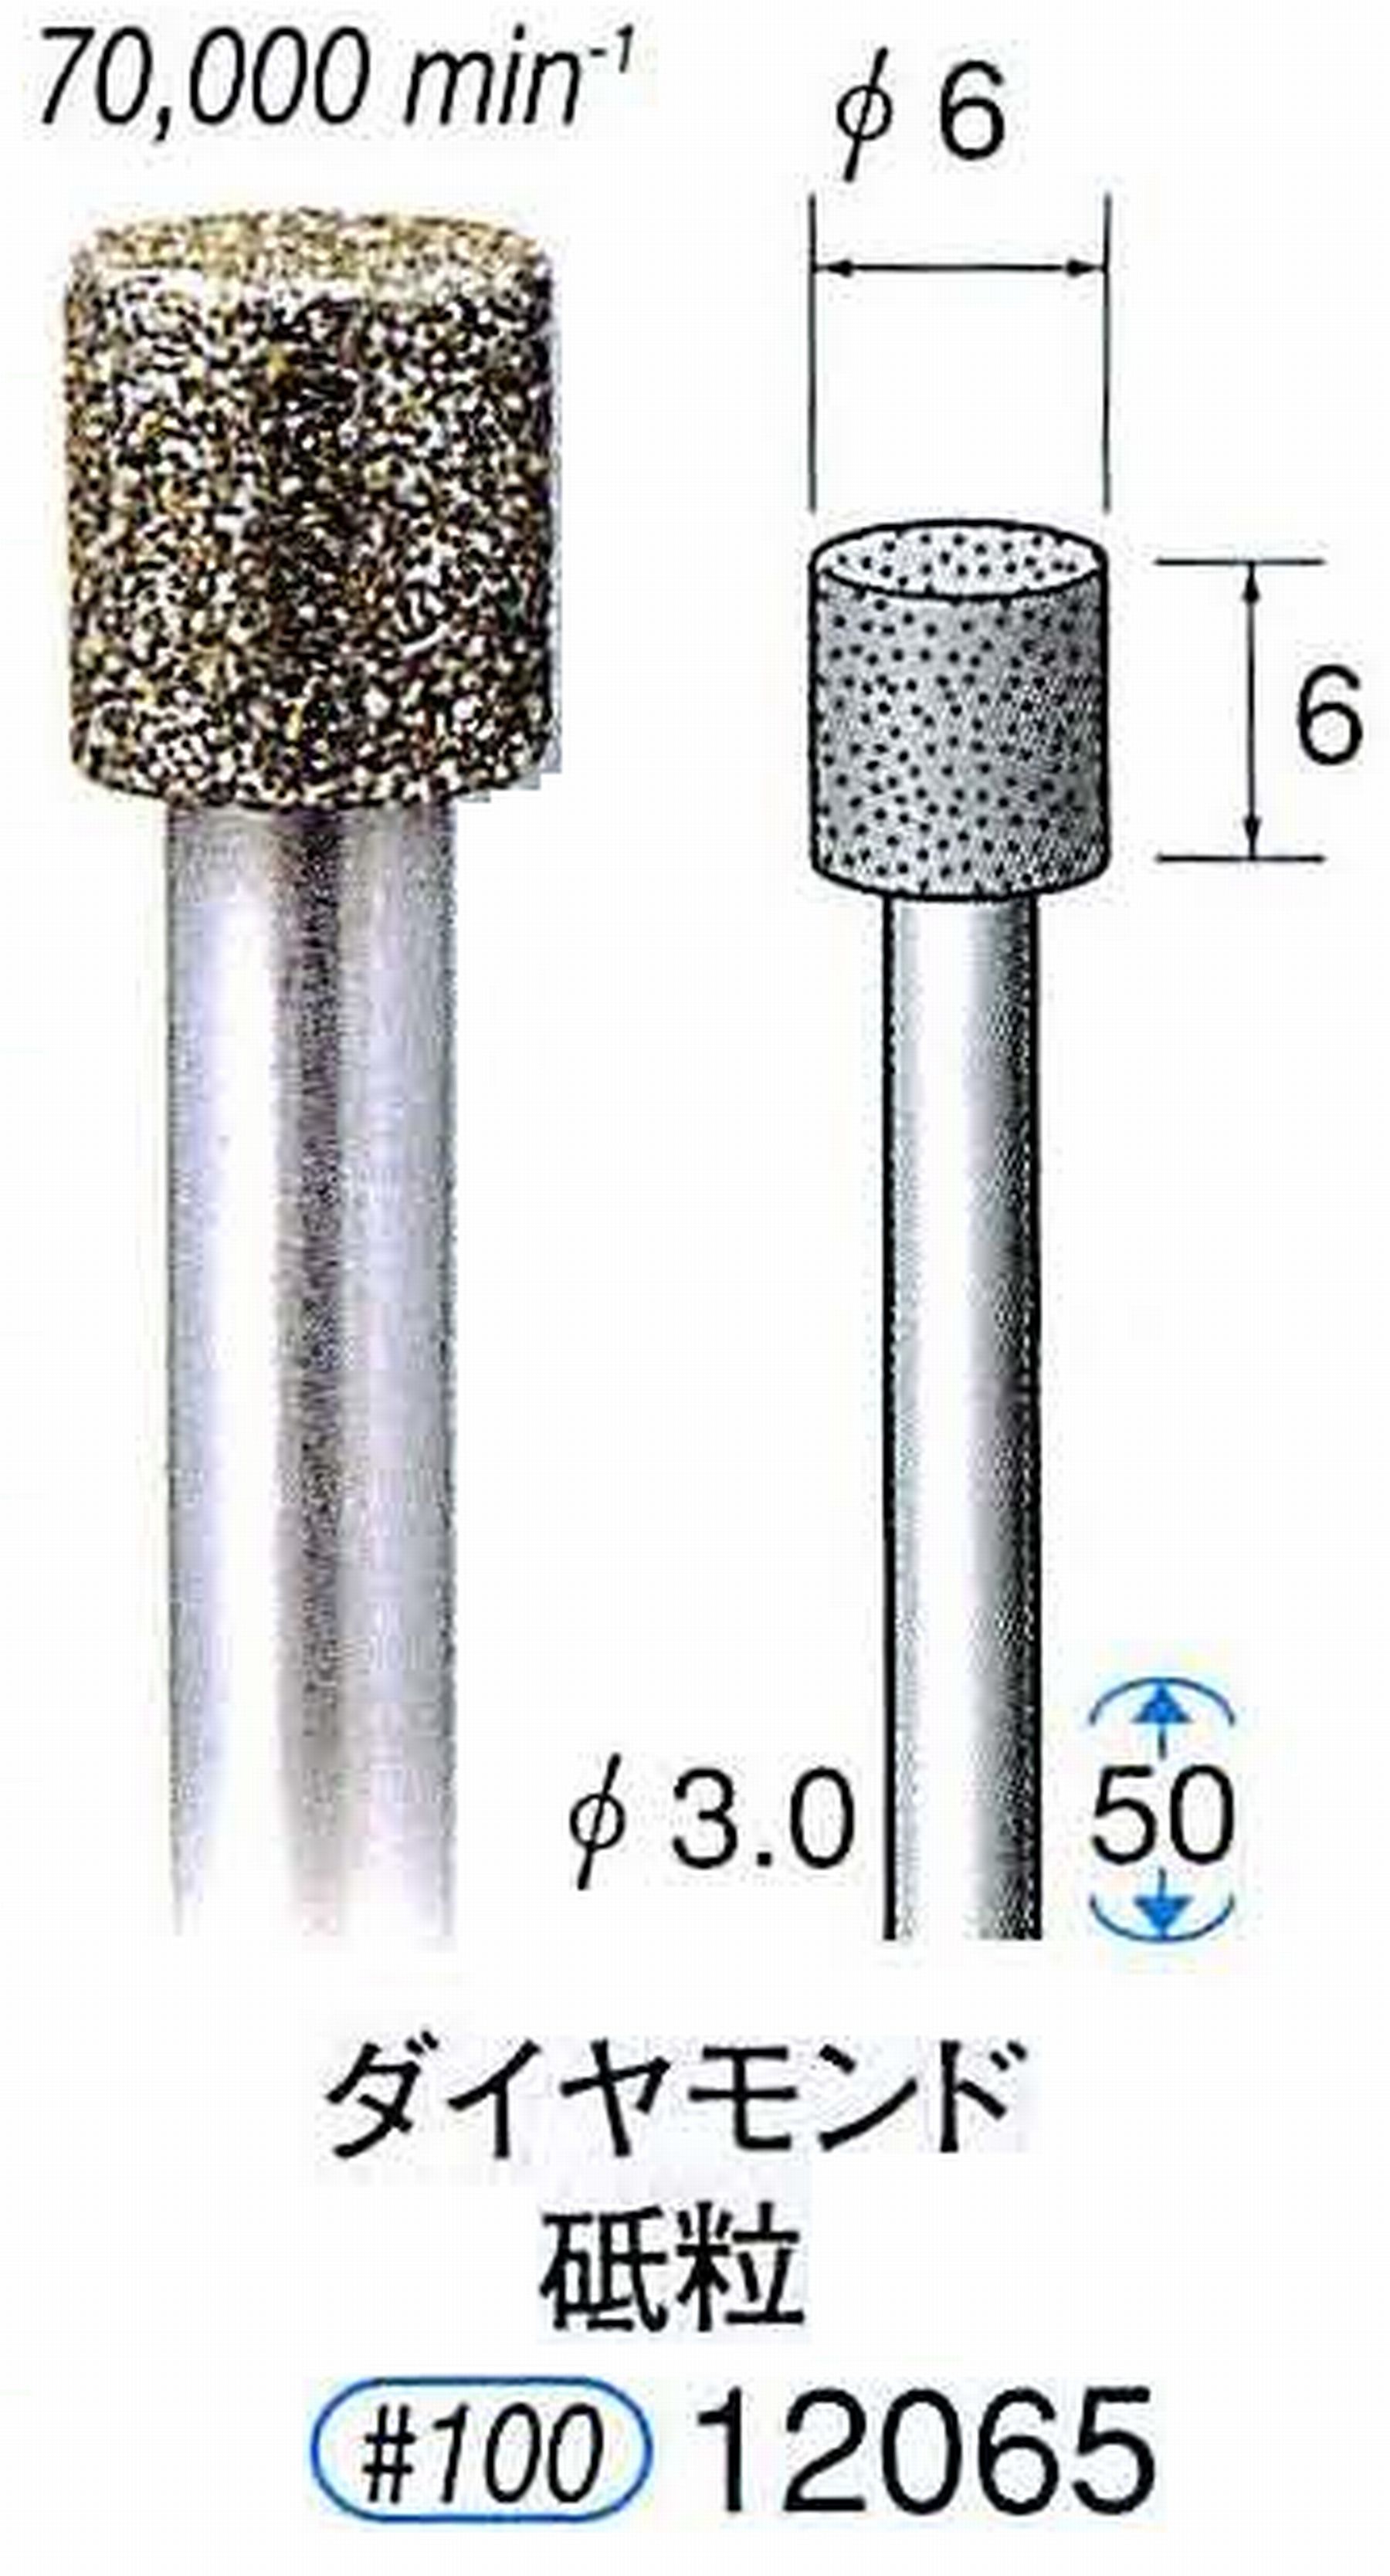 ナカニシ/NAKANISHI 電着ダイヤモンド ダイヤモンド砥粒 軸径(シャンク)φ3.0mm 12065